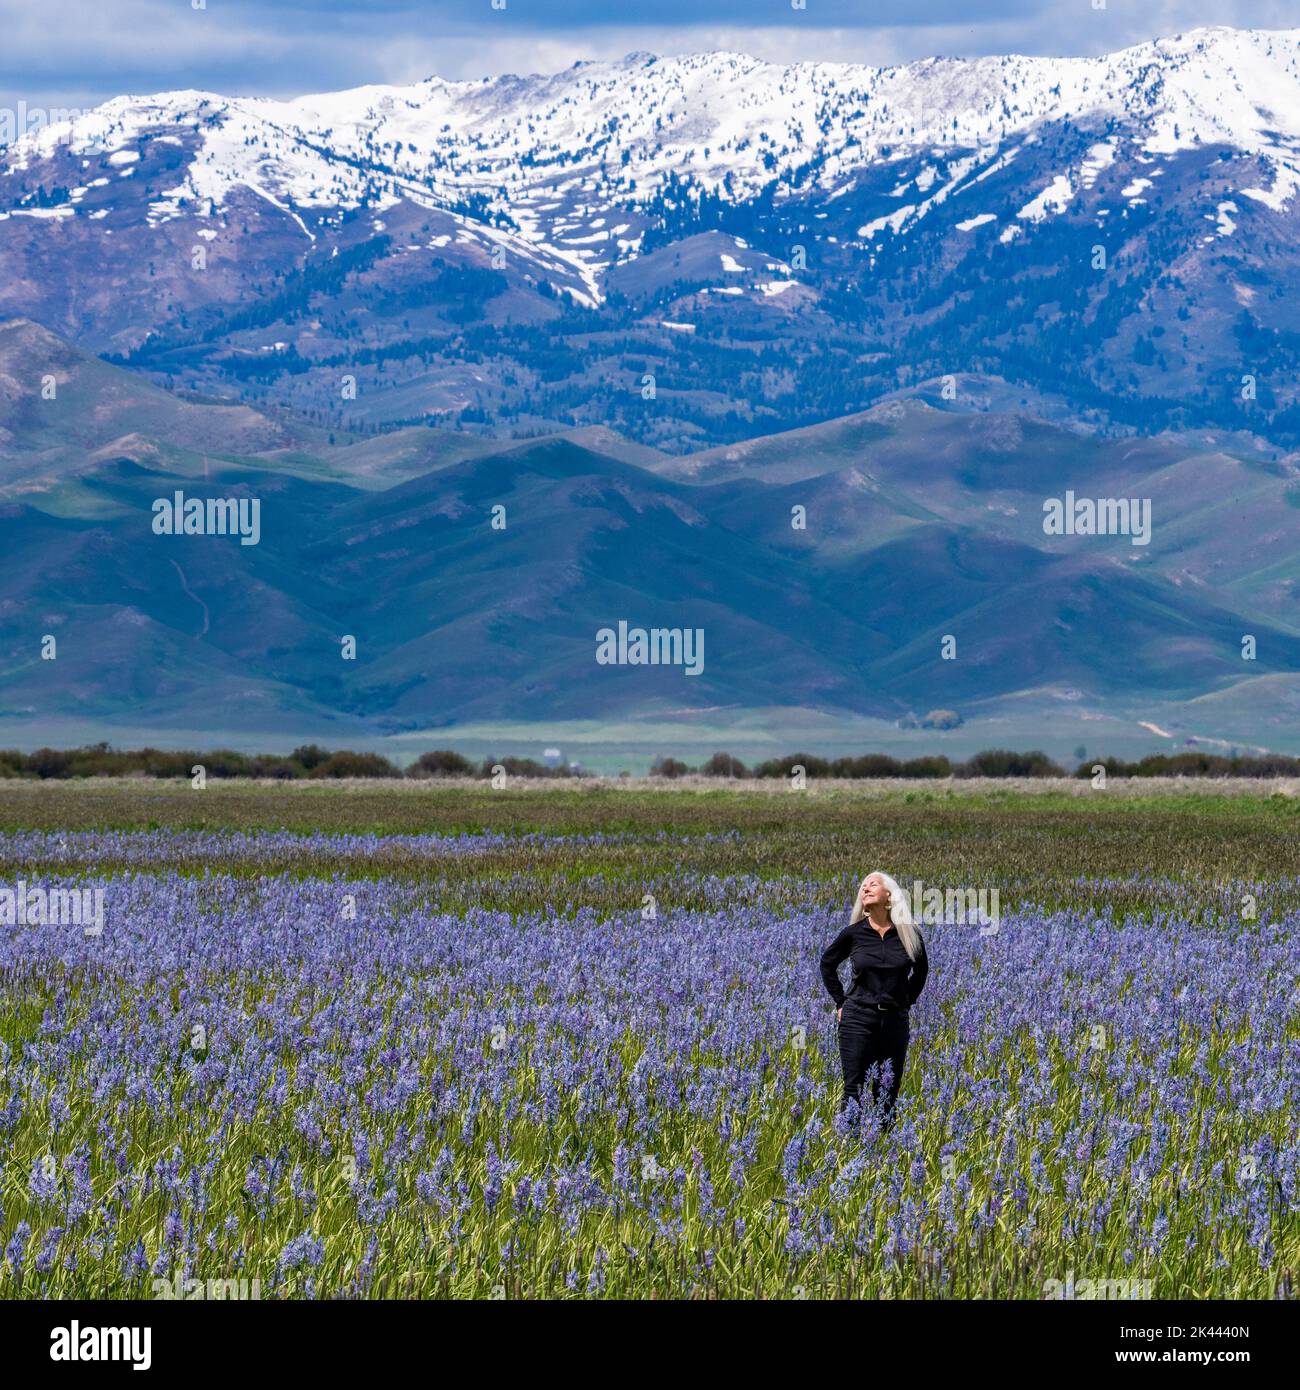 USA, Idaho, Fairfield, Frau, die auf dem Feld blühender Kamas mit Soldier Mountain im Hintergrund steht Stockfoto